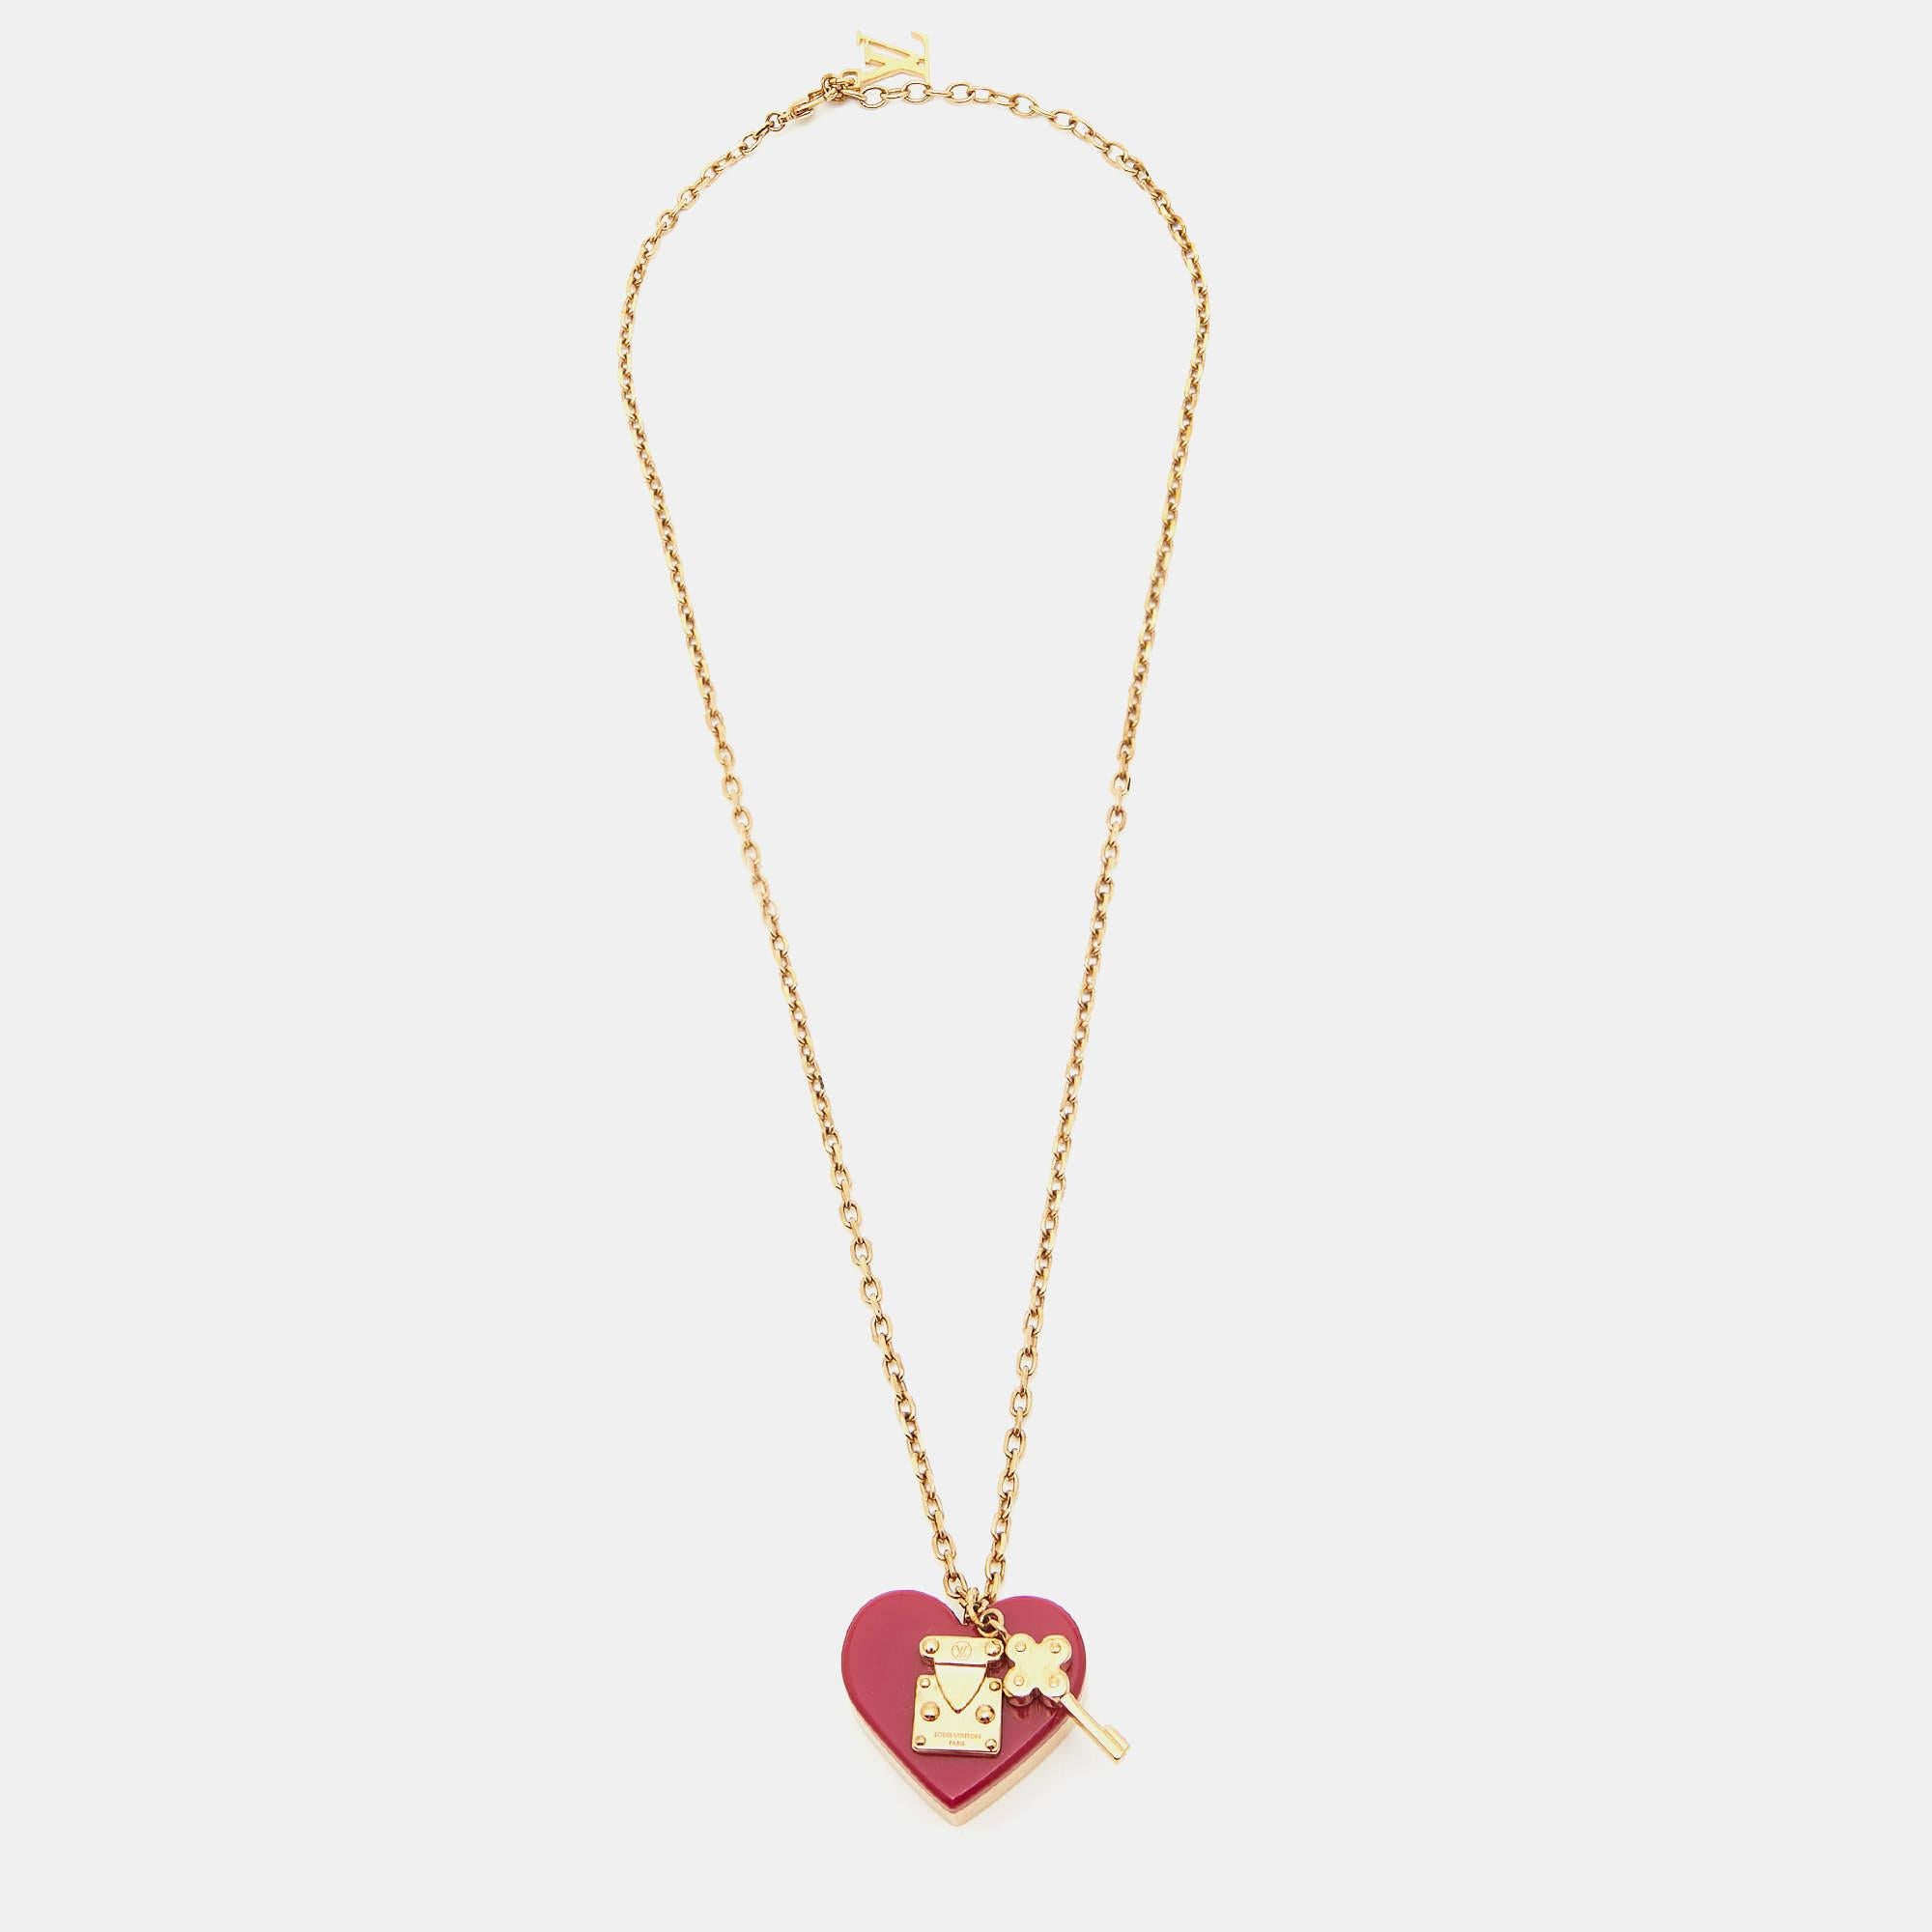 Ce ravissant collier à pendentifs Louis Vuitton deviendra à coup sûr l'un de vos accessoires préférés ! Il est réalisé en métal doré et la chaîne porte un pendentif en forme de cœur et de clé.

